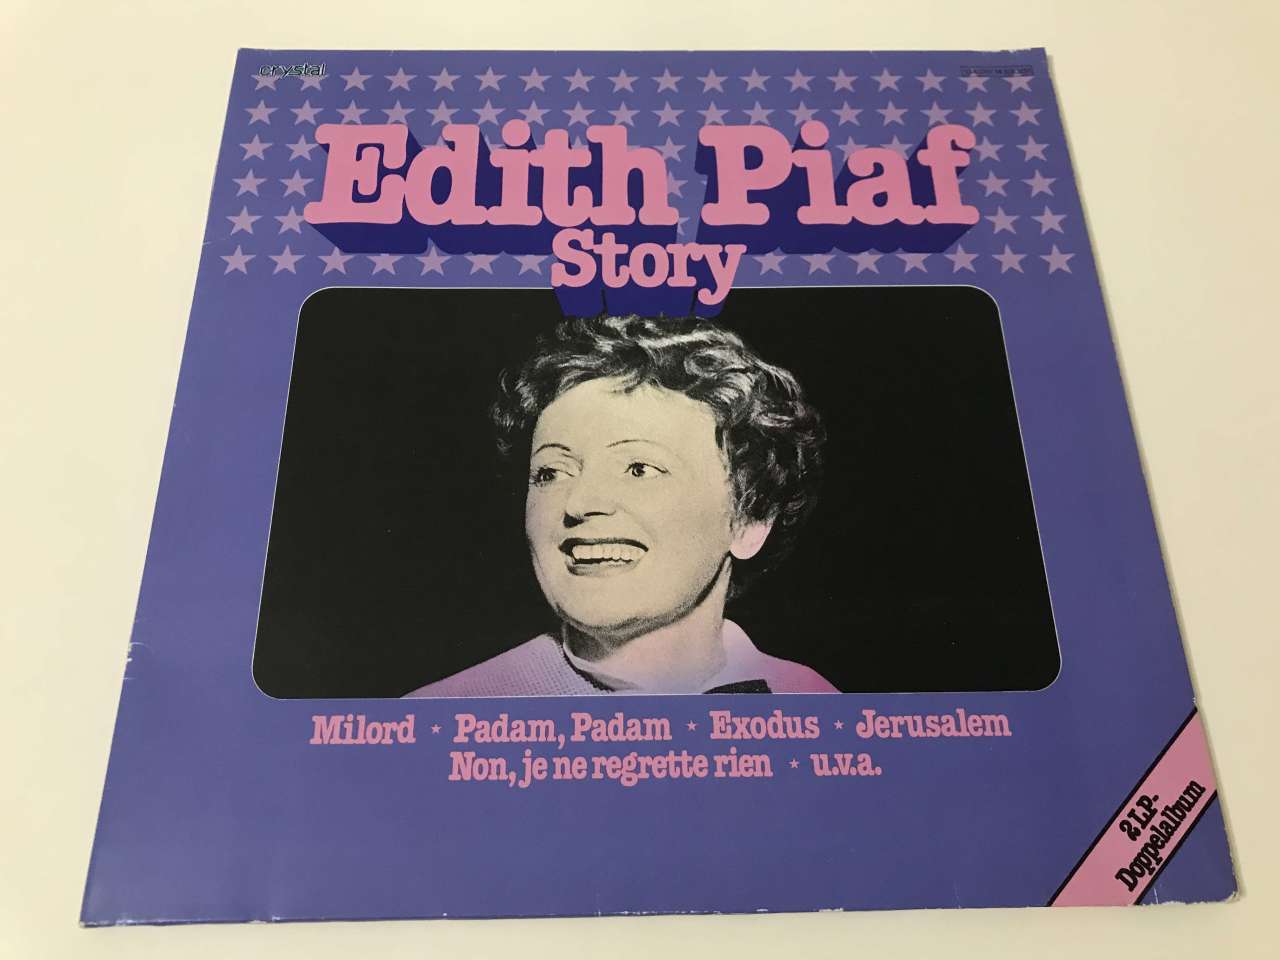 Edith Piaf – Edith Piaf Story 2 LP